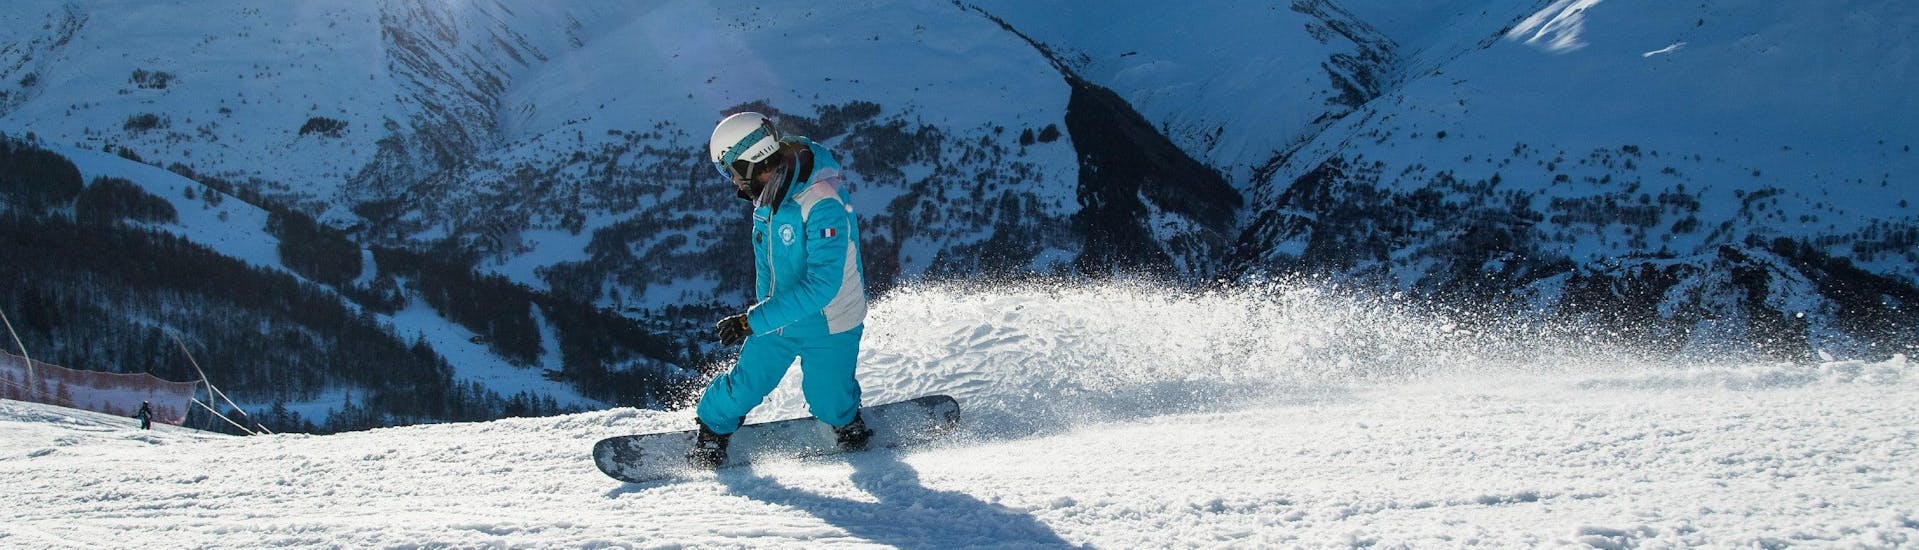 Un moniteur de snowboard de l'école de ski ESI Ecoloski Barèges montre ses compétences en snowboard qu'il utilise lors d'un Cours particulier de snowboard - Basse saison.